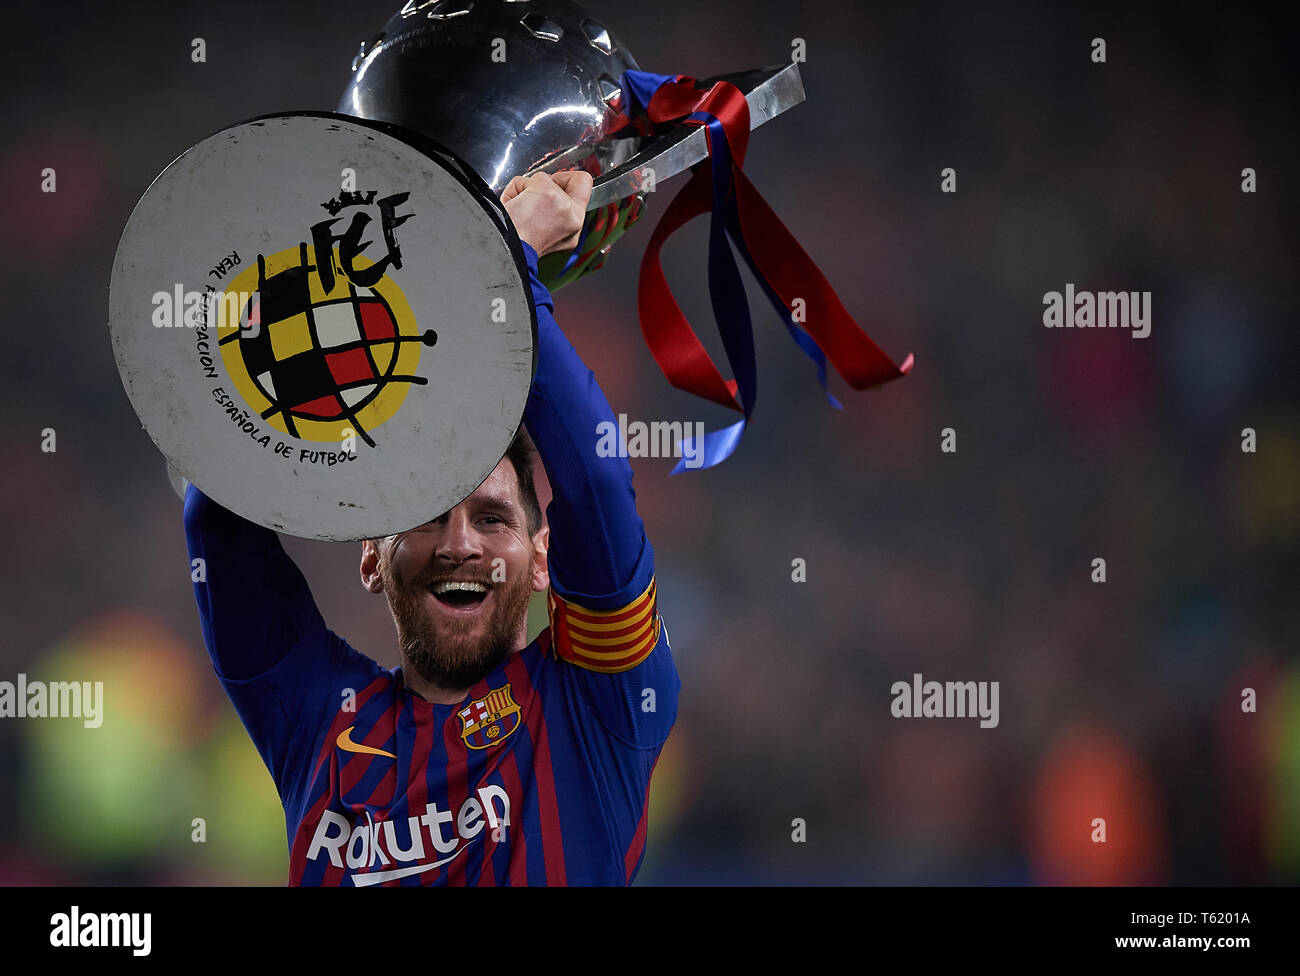 España. 27 abr, 2019. Fútbol: Santander 2018/19 : de Lionel Messi de Barcelona celebra con el trofeo de la Liga tras la victoria de su en la División